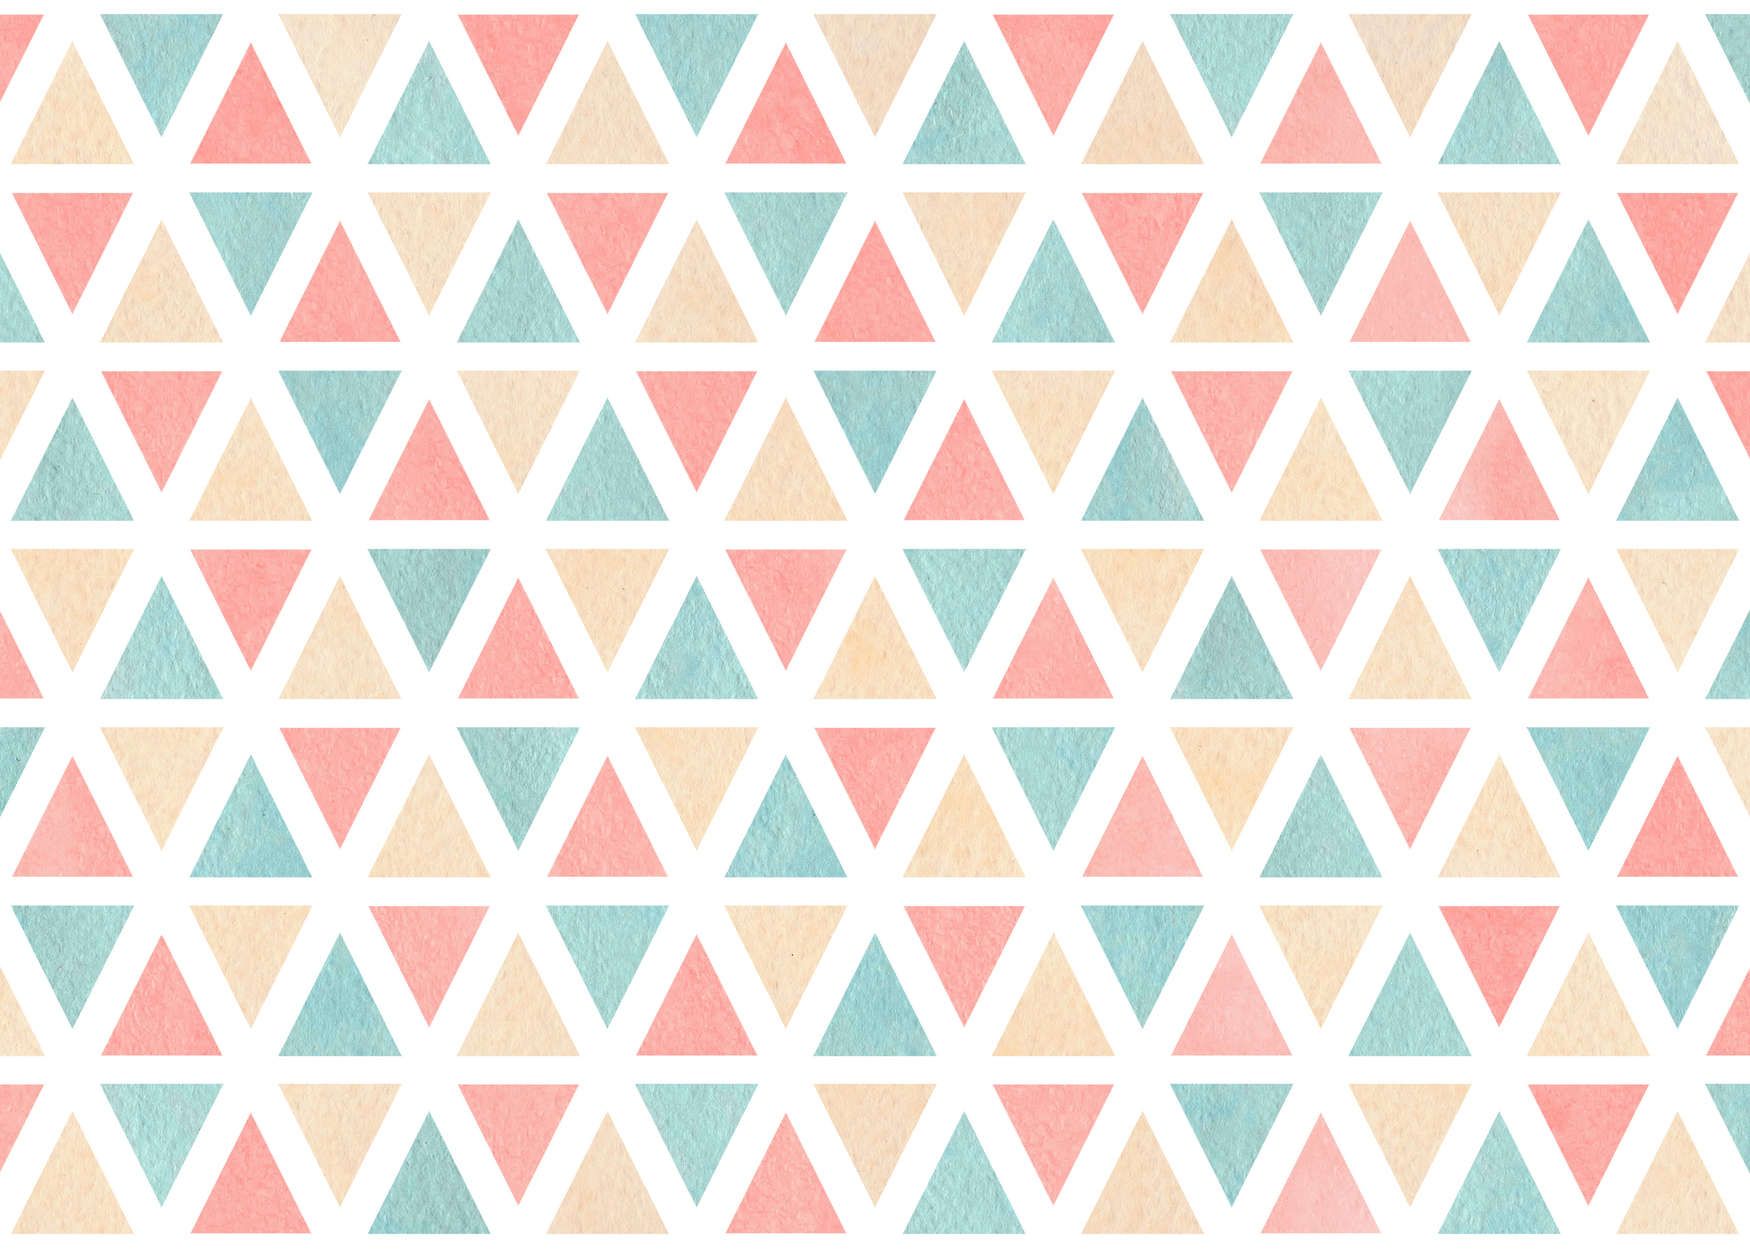             Fototapete grafisches Muster mit bunten Dreiecken – Glattes & mattes Vlies
        